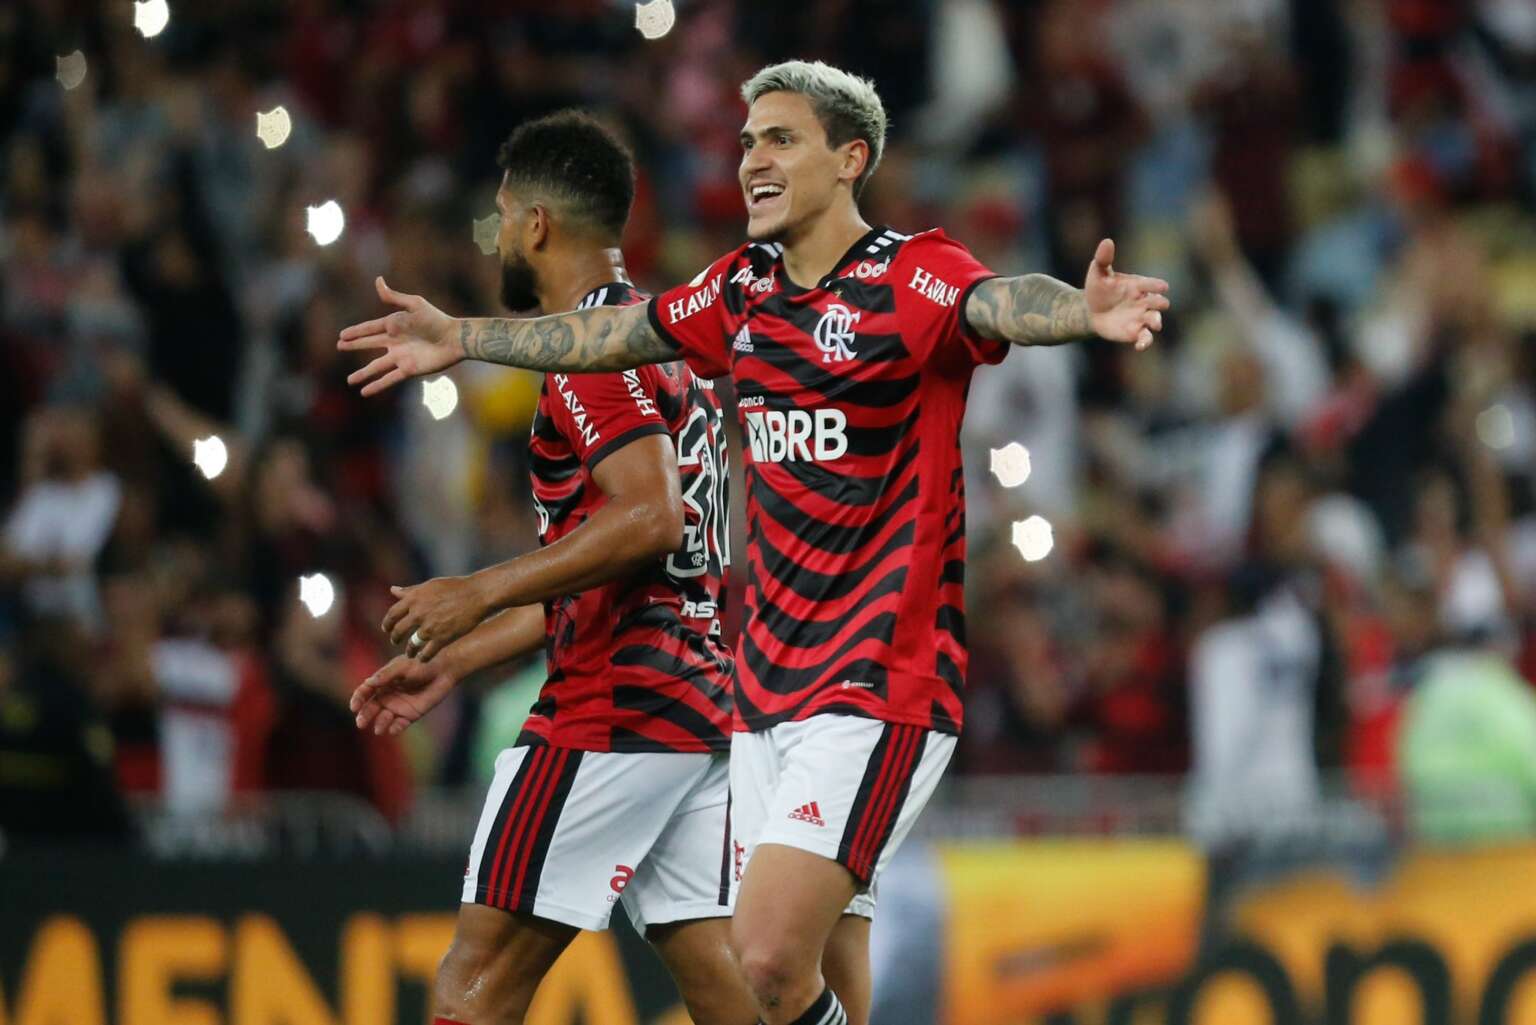 Flamengo sofre goleada de 4 a 0 contra o Bragantino em partida desastrosa